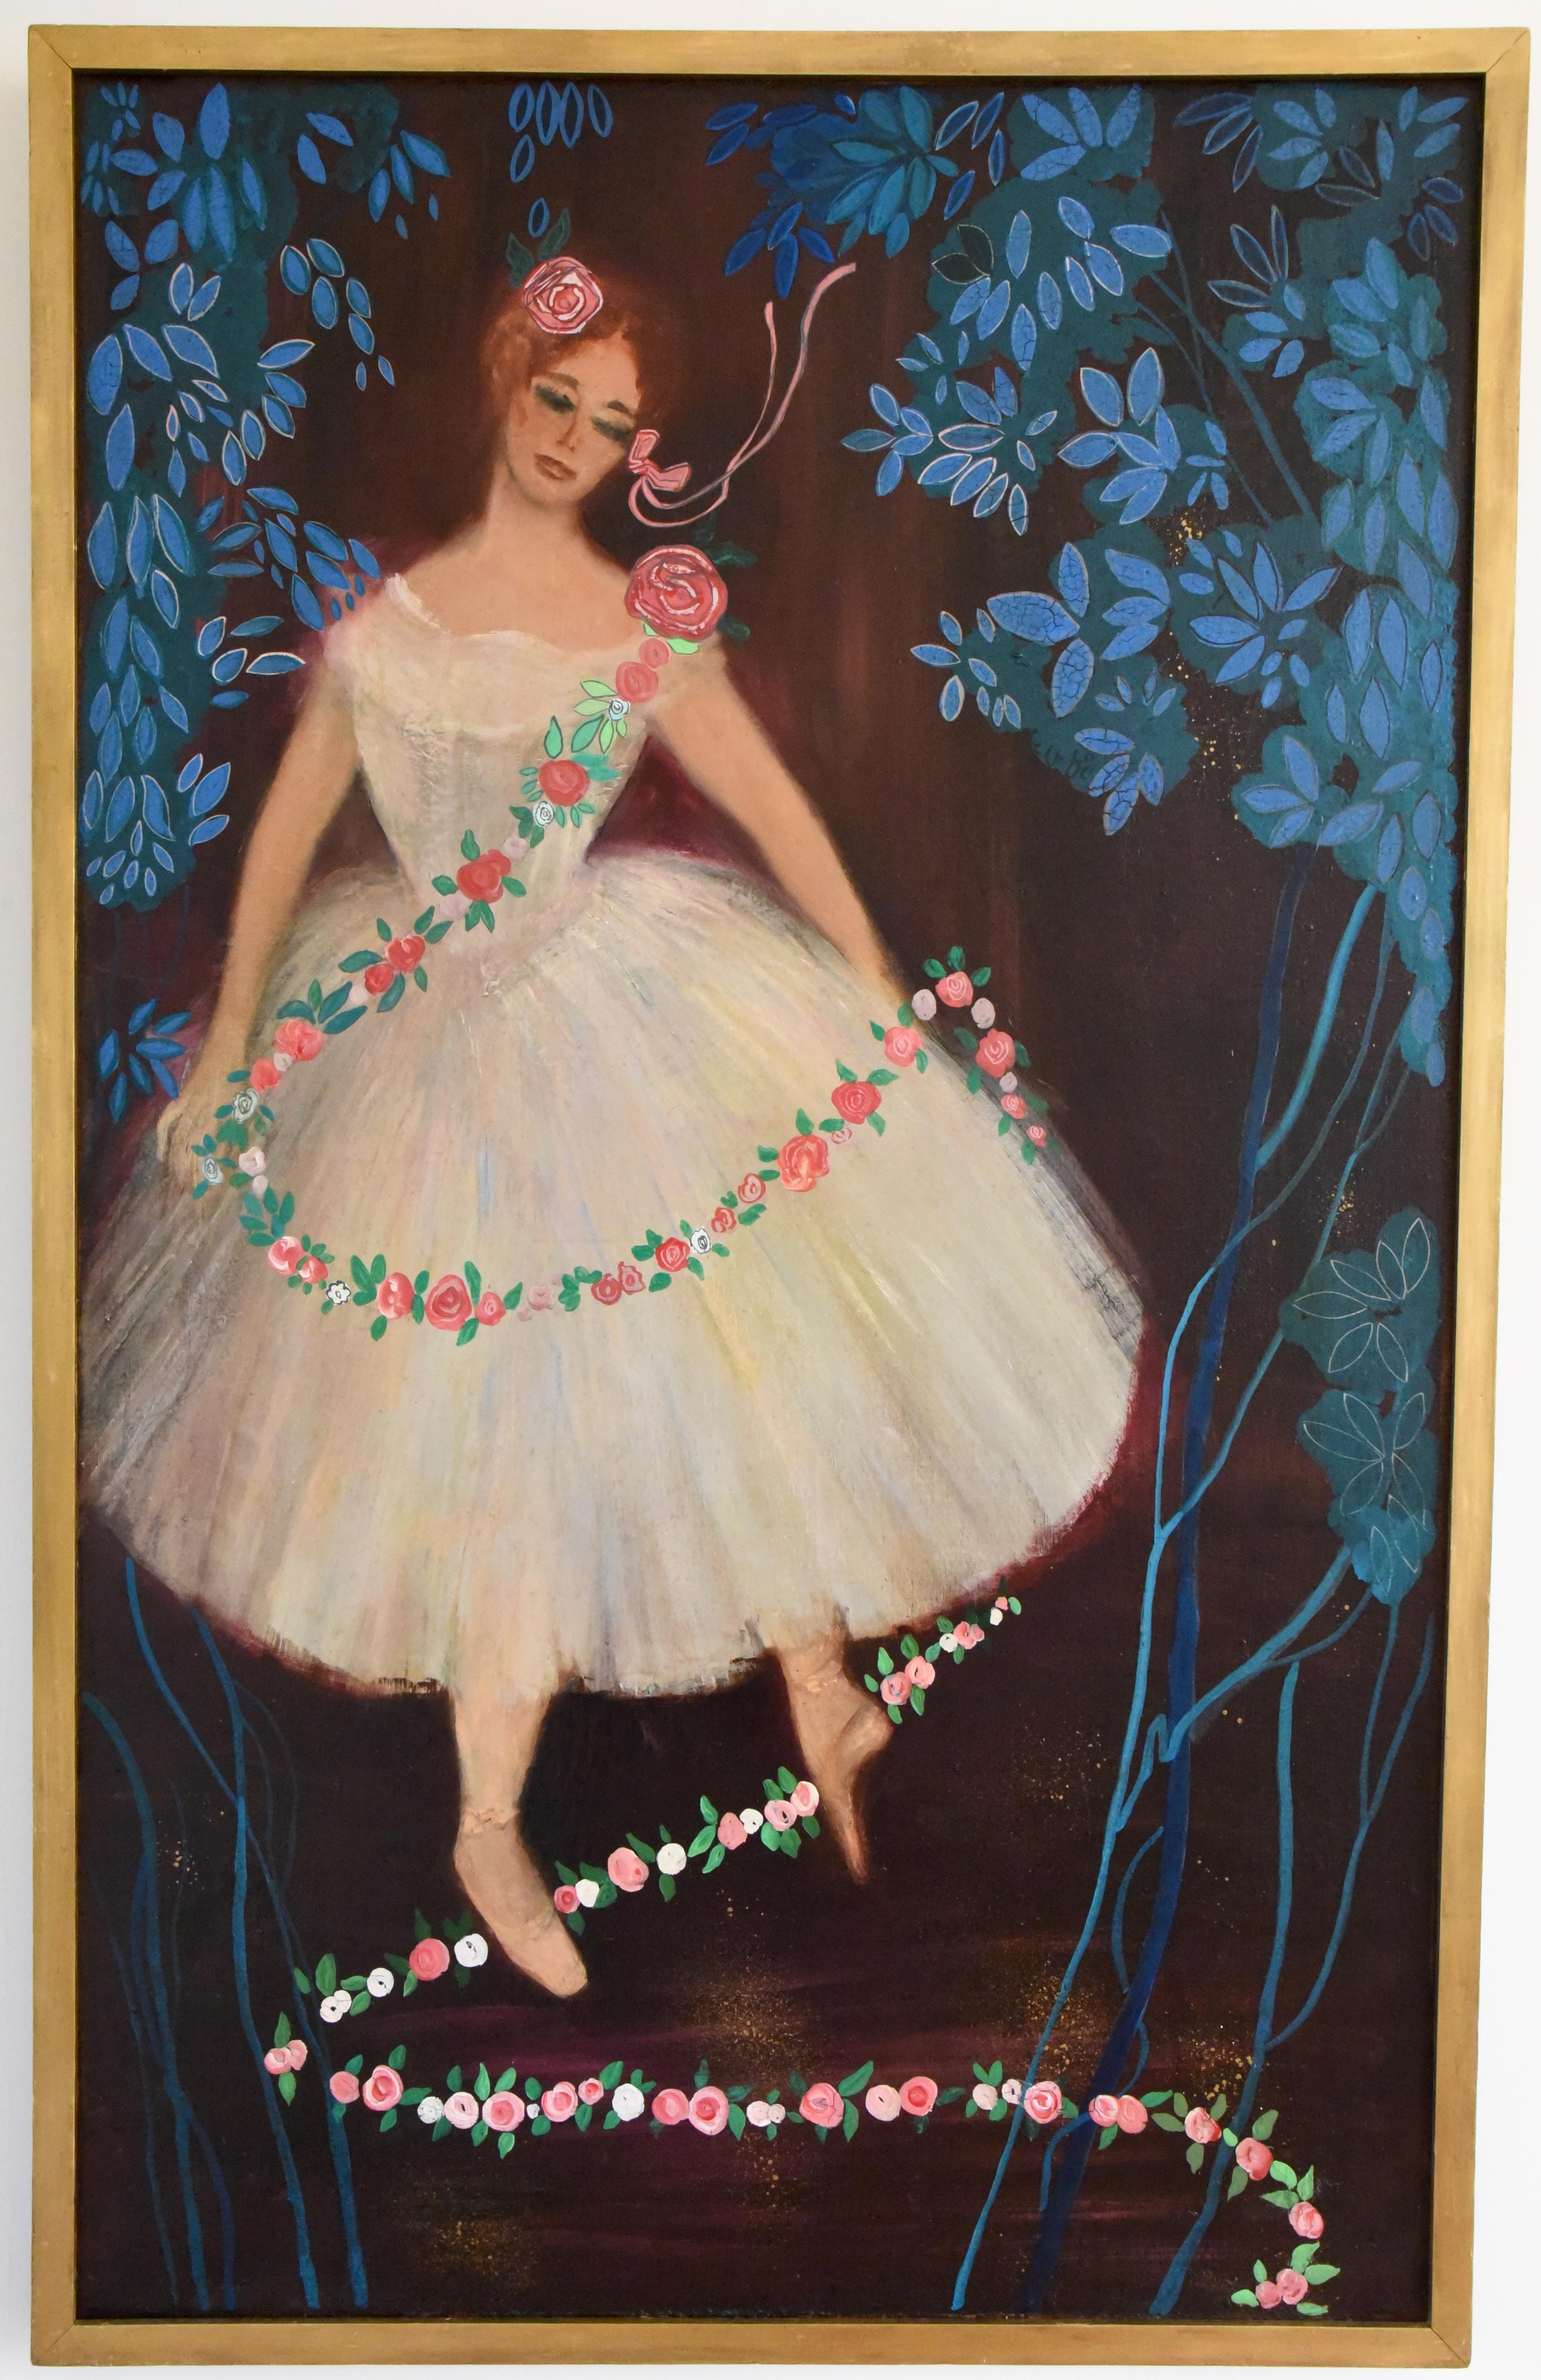 Großes farbenfrohes Ölgemälde der Ballerina Claude Bessy aus der Mitte des Jahrhunderts, Frankreich, 1956.
Sie trägt ein weißes Tutu und eine Girlande aus Rosen. Die Bühne ist mit türkisfarbenen Blumen und Blättern geschmückt.
ca. 1956-1960.